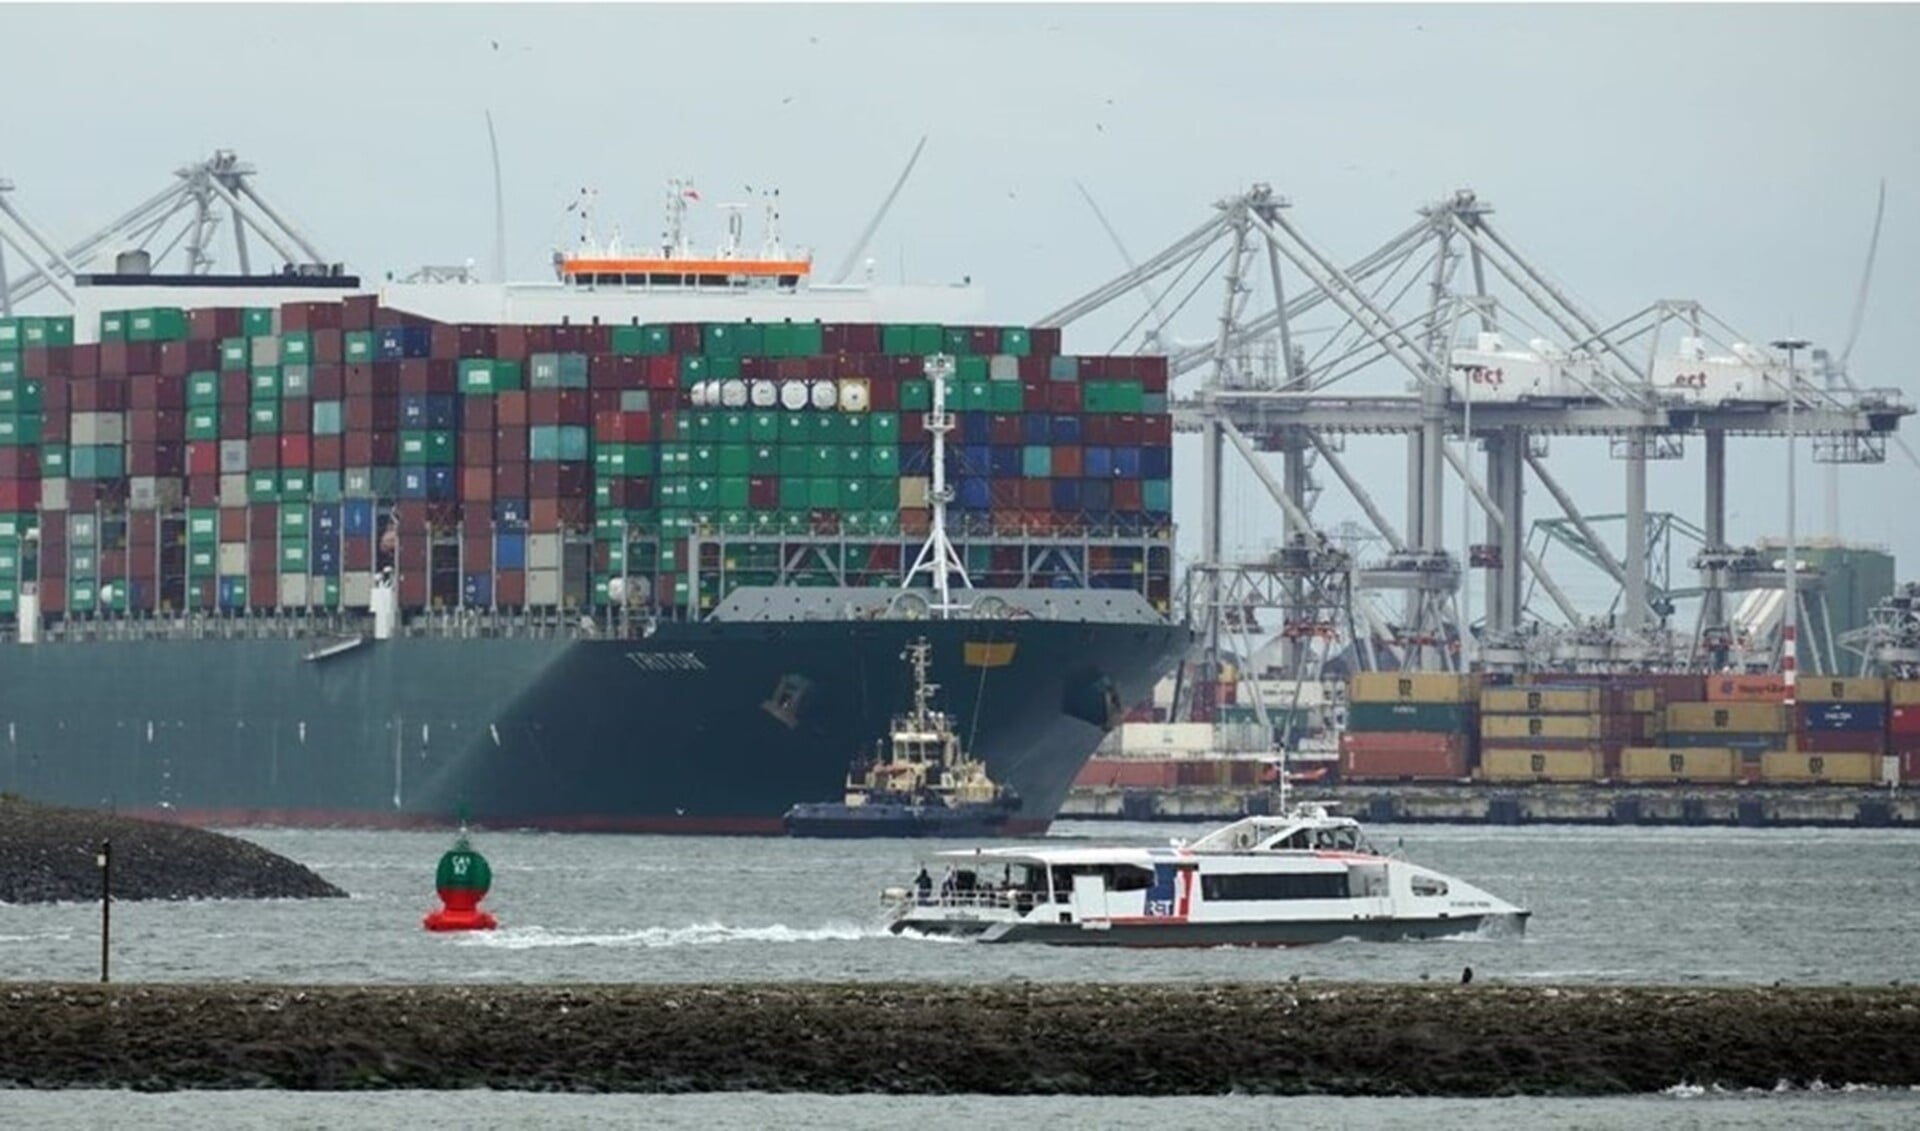 Het akkoord zorgt voor duidelijkheid en stabiliteit, aldus Havenbedrijf Rotterdam. Foto: Dick van Bergem